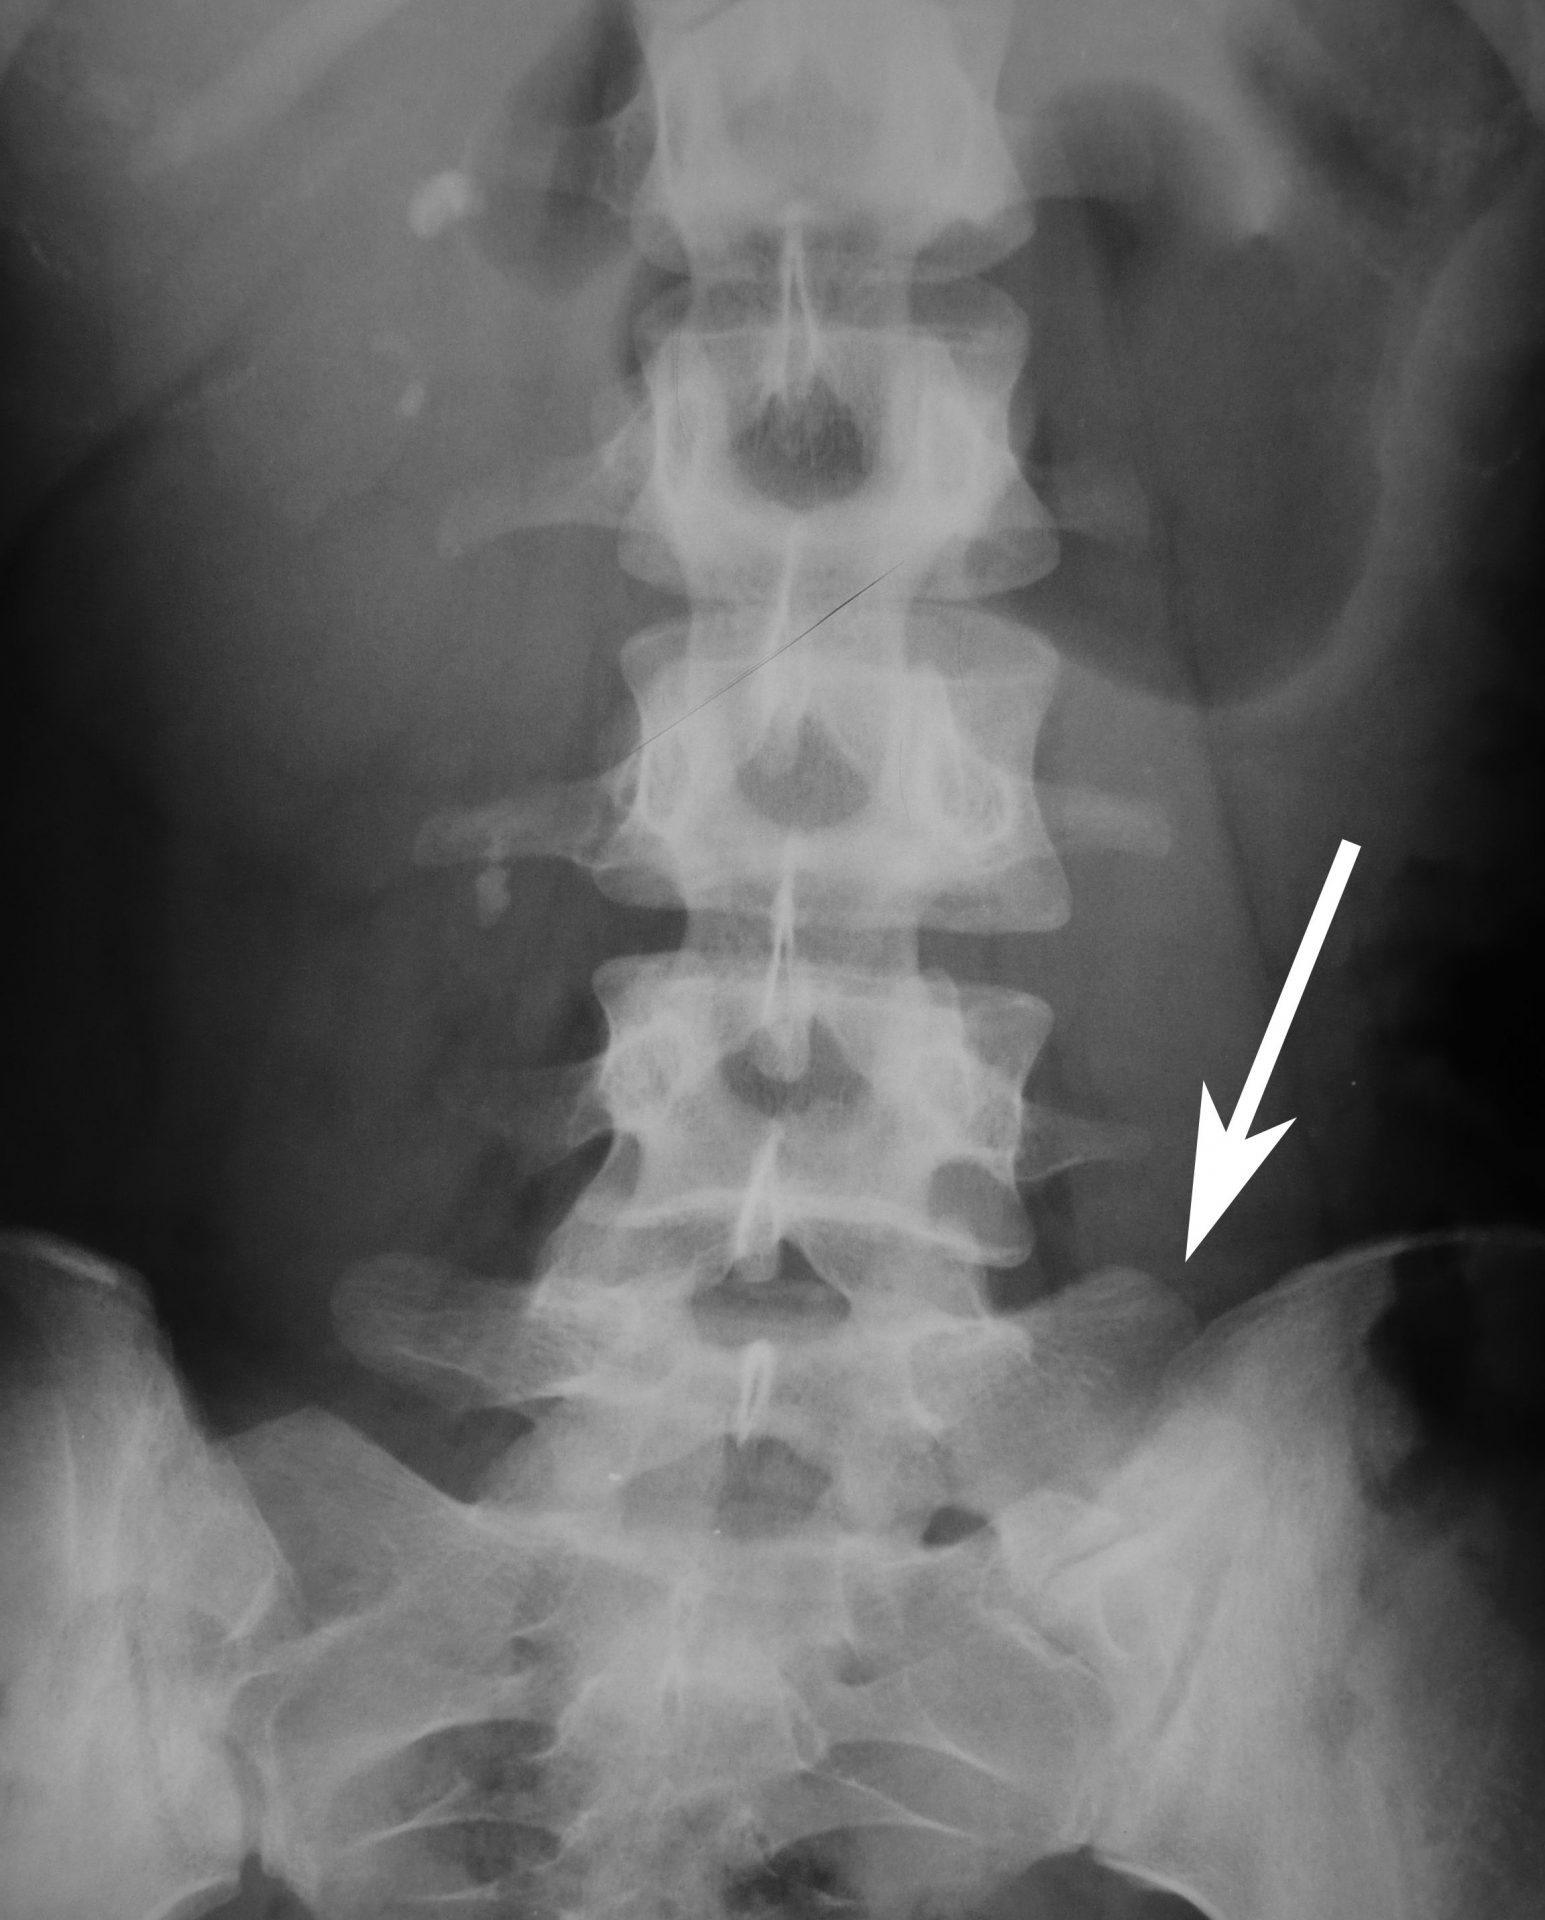 röntgenmynd sem sýnir sacralization